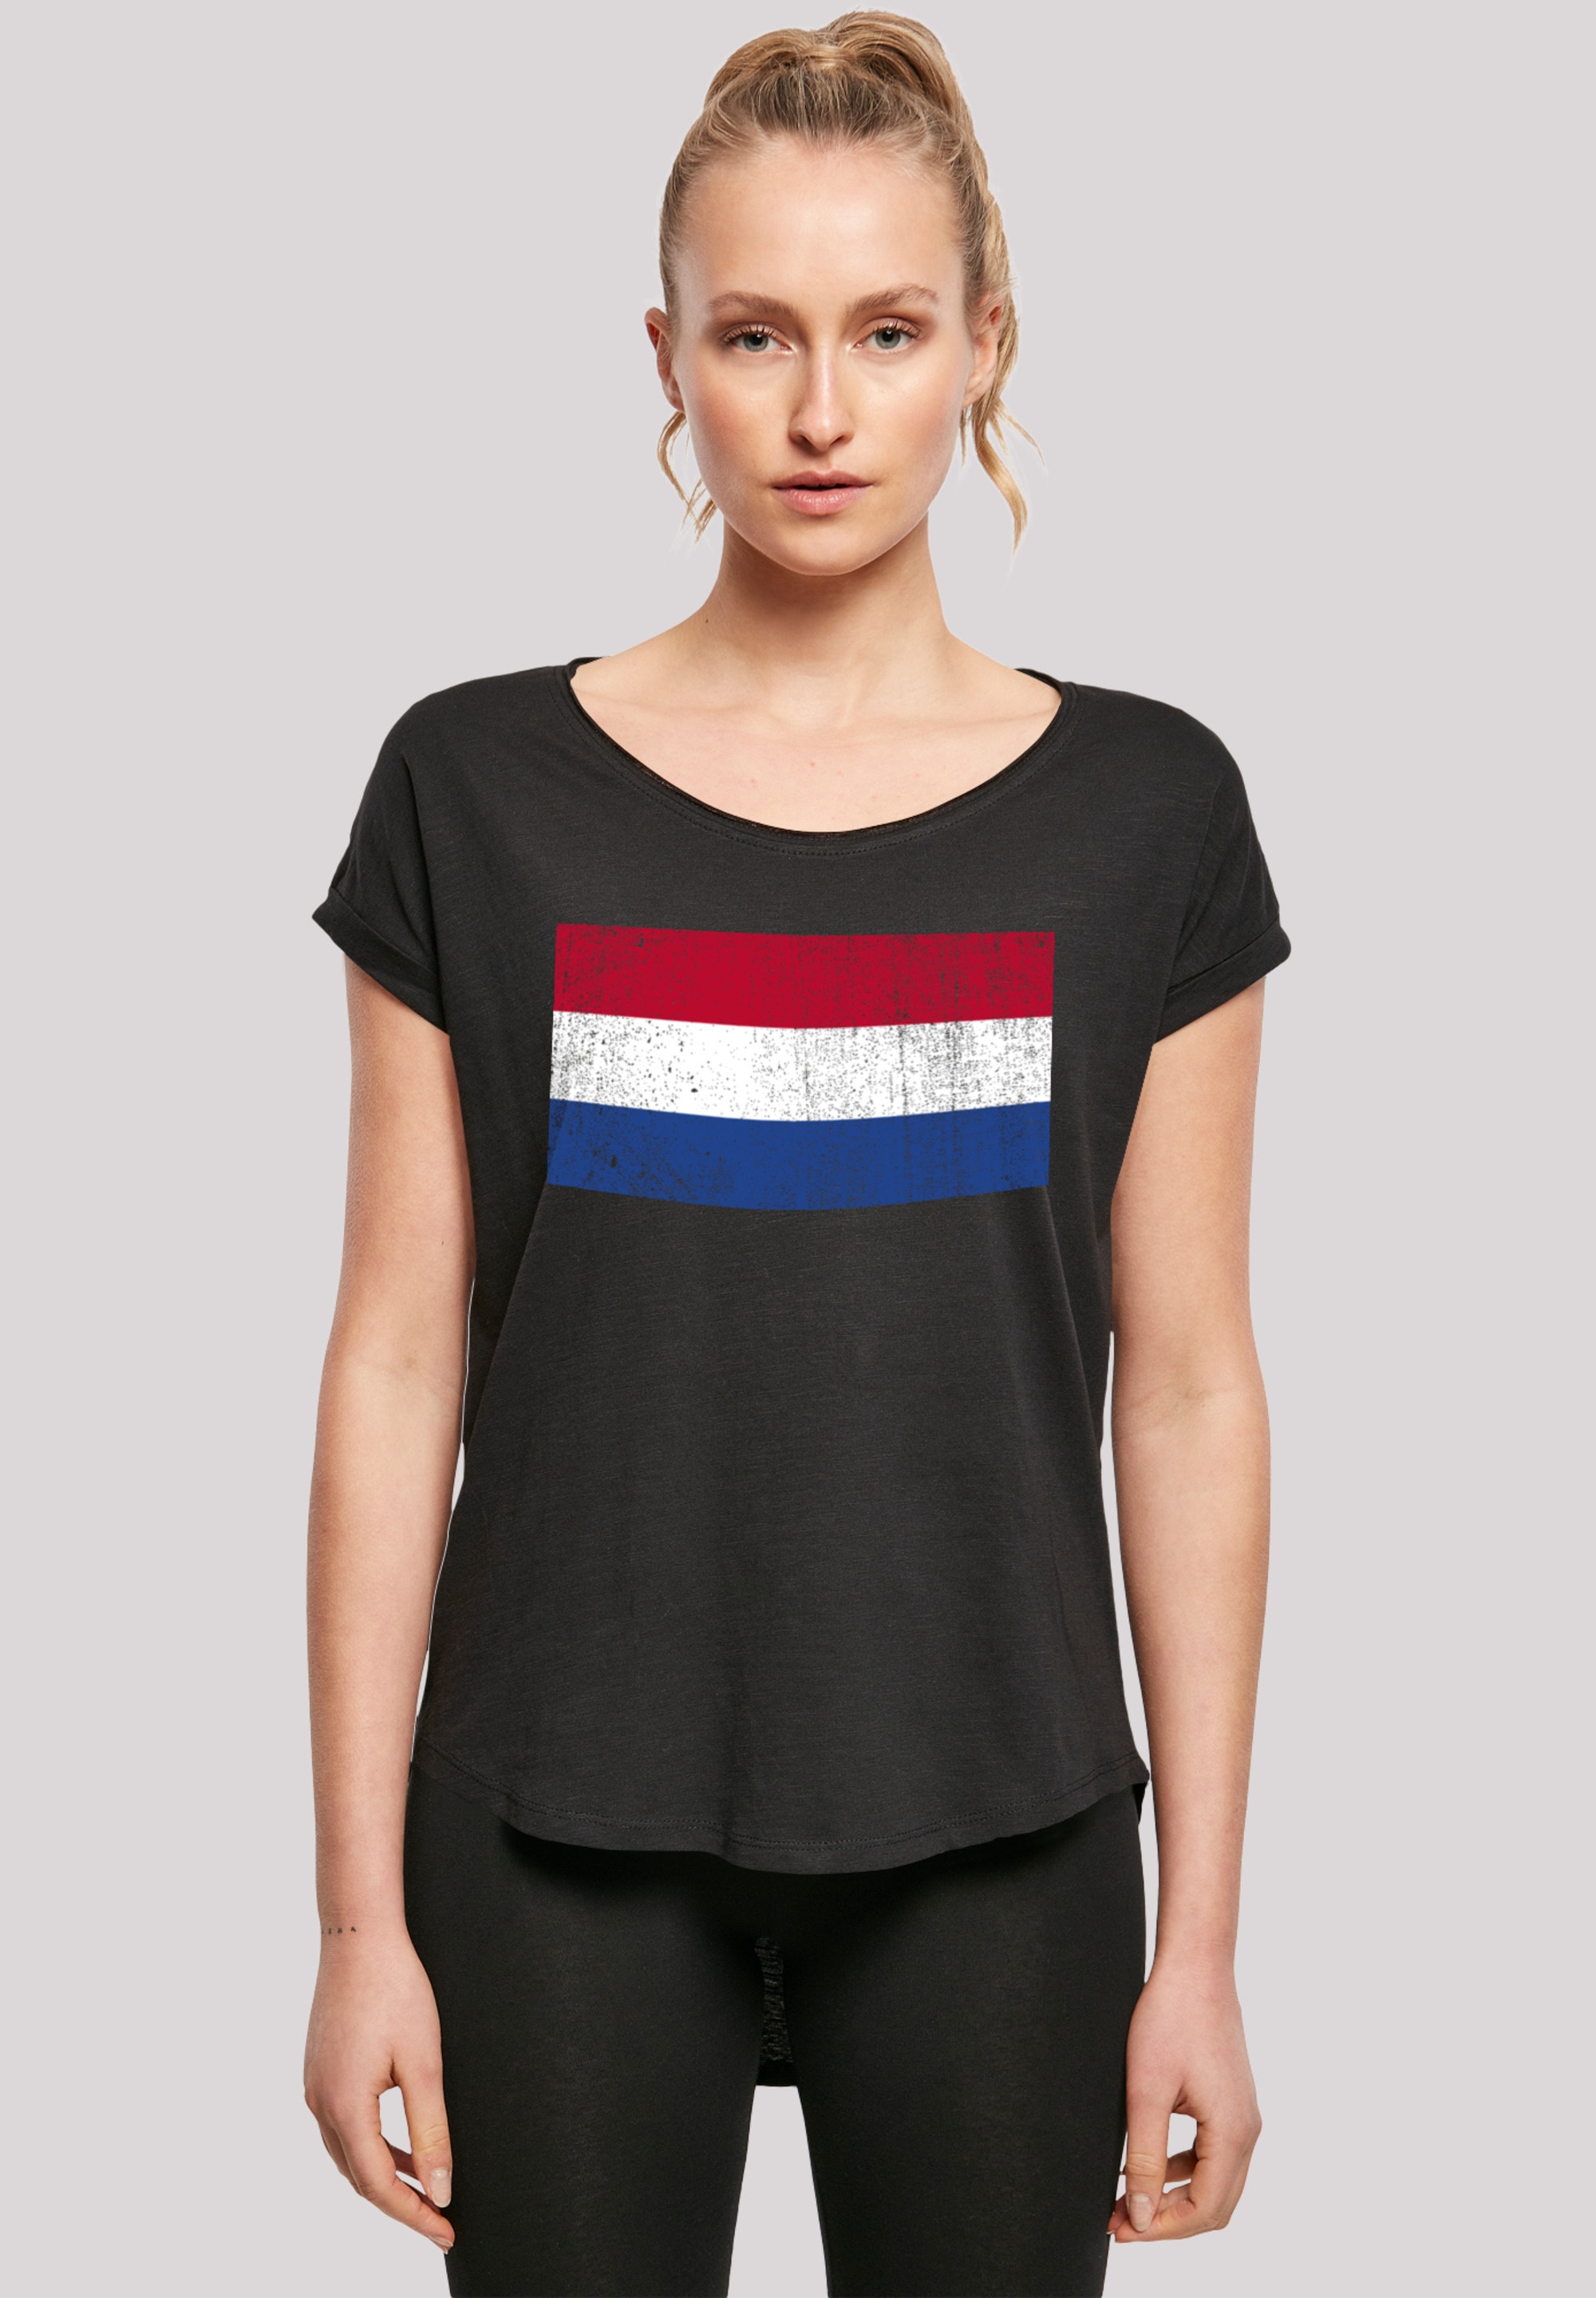 Holland F4NT4STIC NIederlande T-Shirt Print »Netherlands shoppen distressed«, Flagge